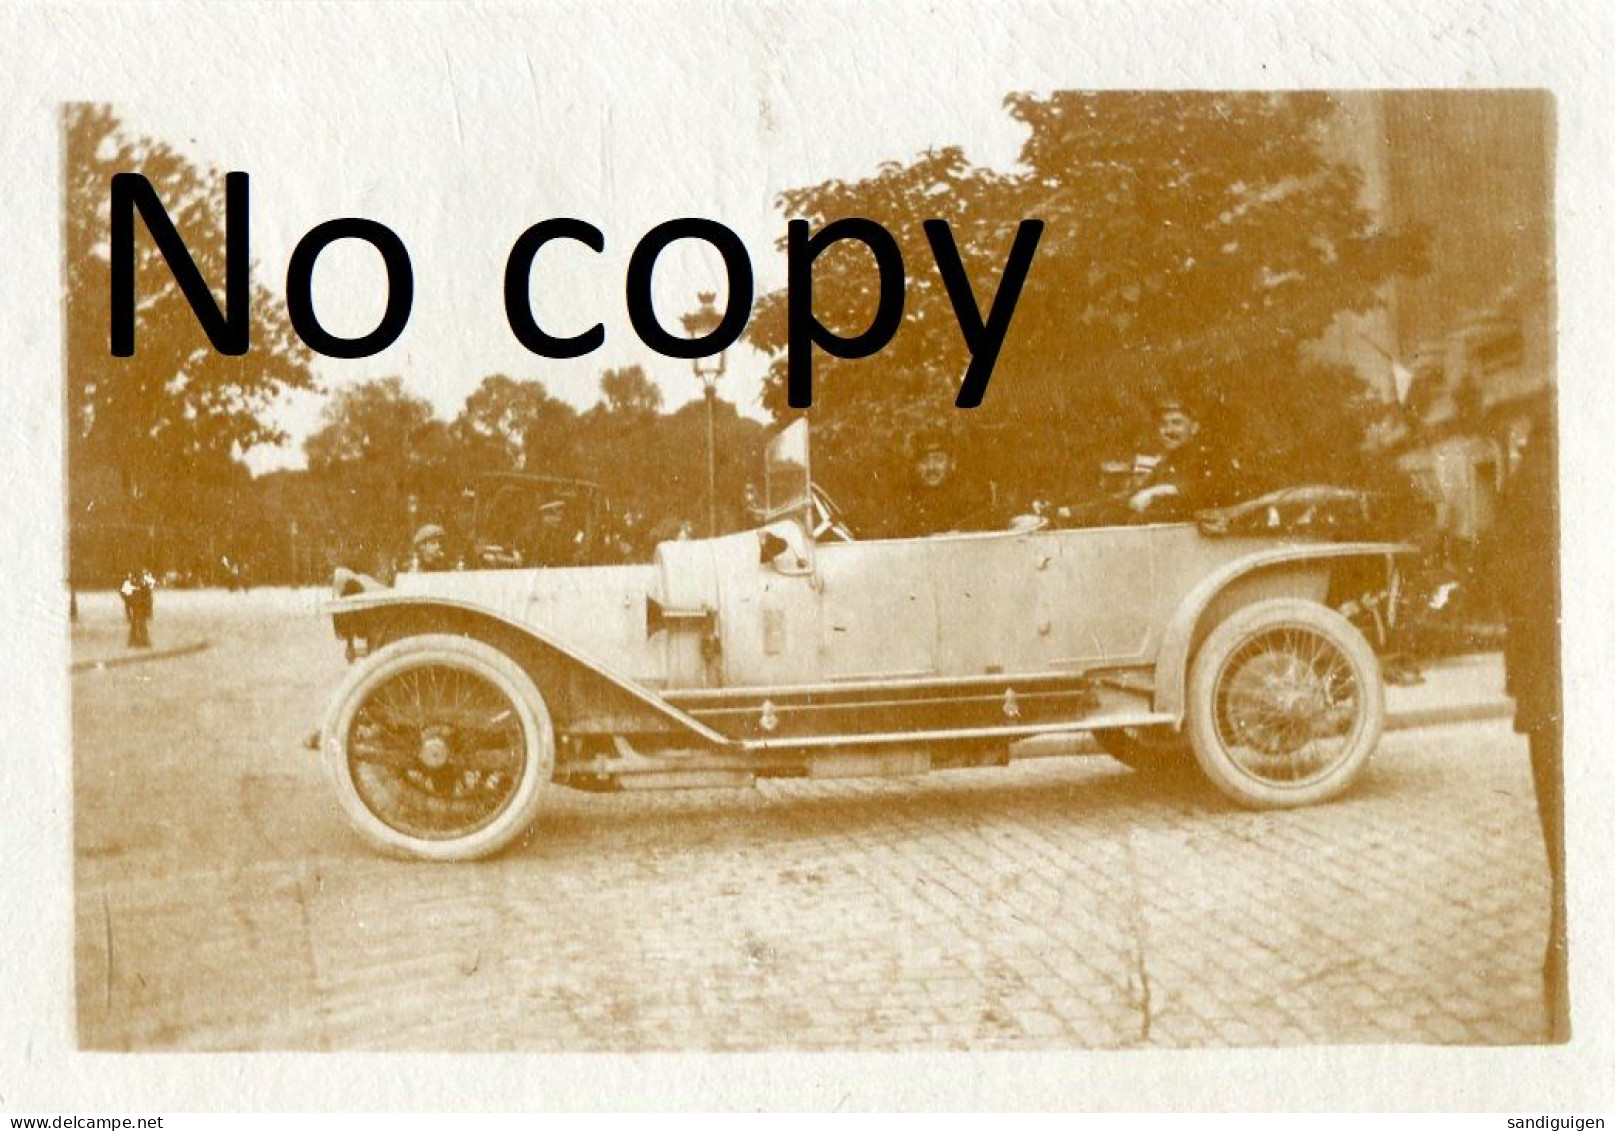 PHOTO FRANCAISE - A LYON RHONE - OFFICIER EN AUTOMOBILE PARTANT POUR LE REGIMENT LE 2 AOUT 1914 - GUERRE 1914 1918 - Krieg, Militär